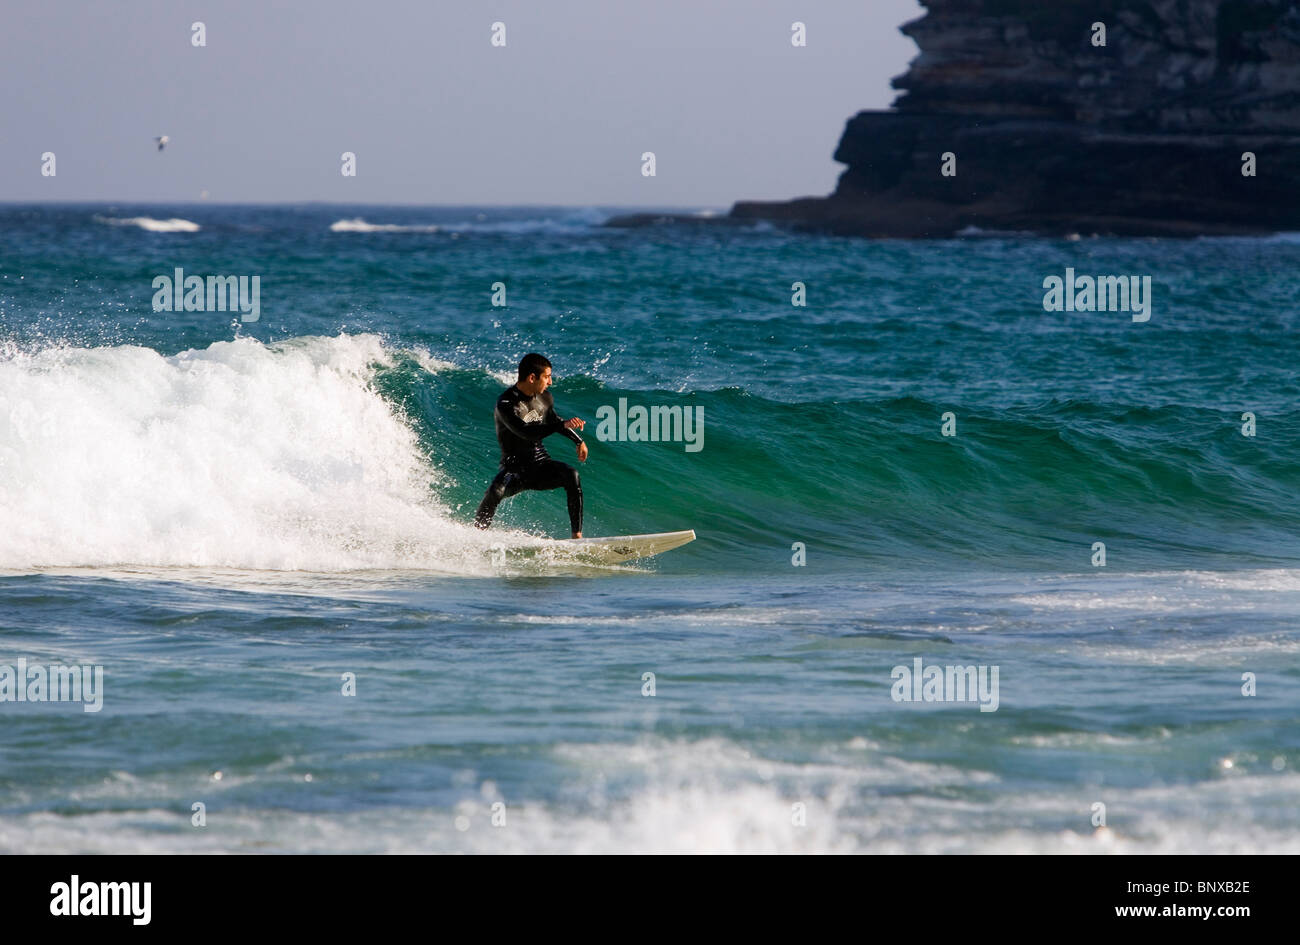 Fangen eine Welle - Surfer in Aktion am Bondi Beach. Sydney, New South Wales, Australien Stockfoto